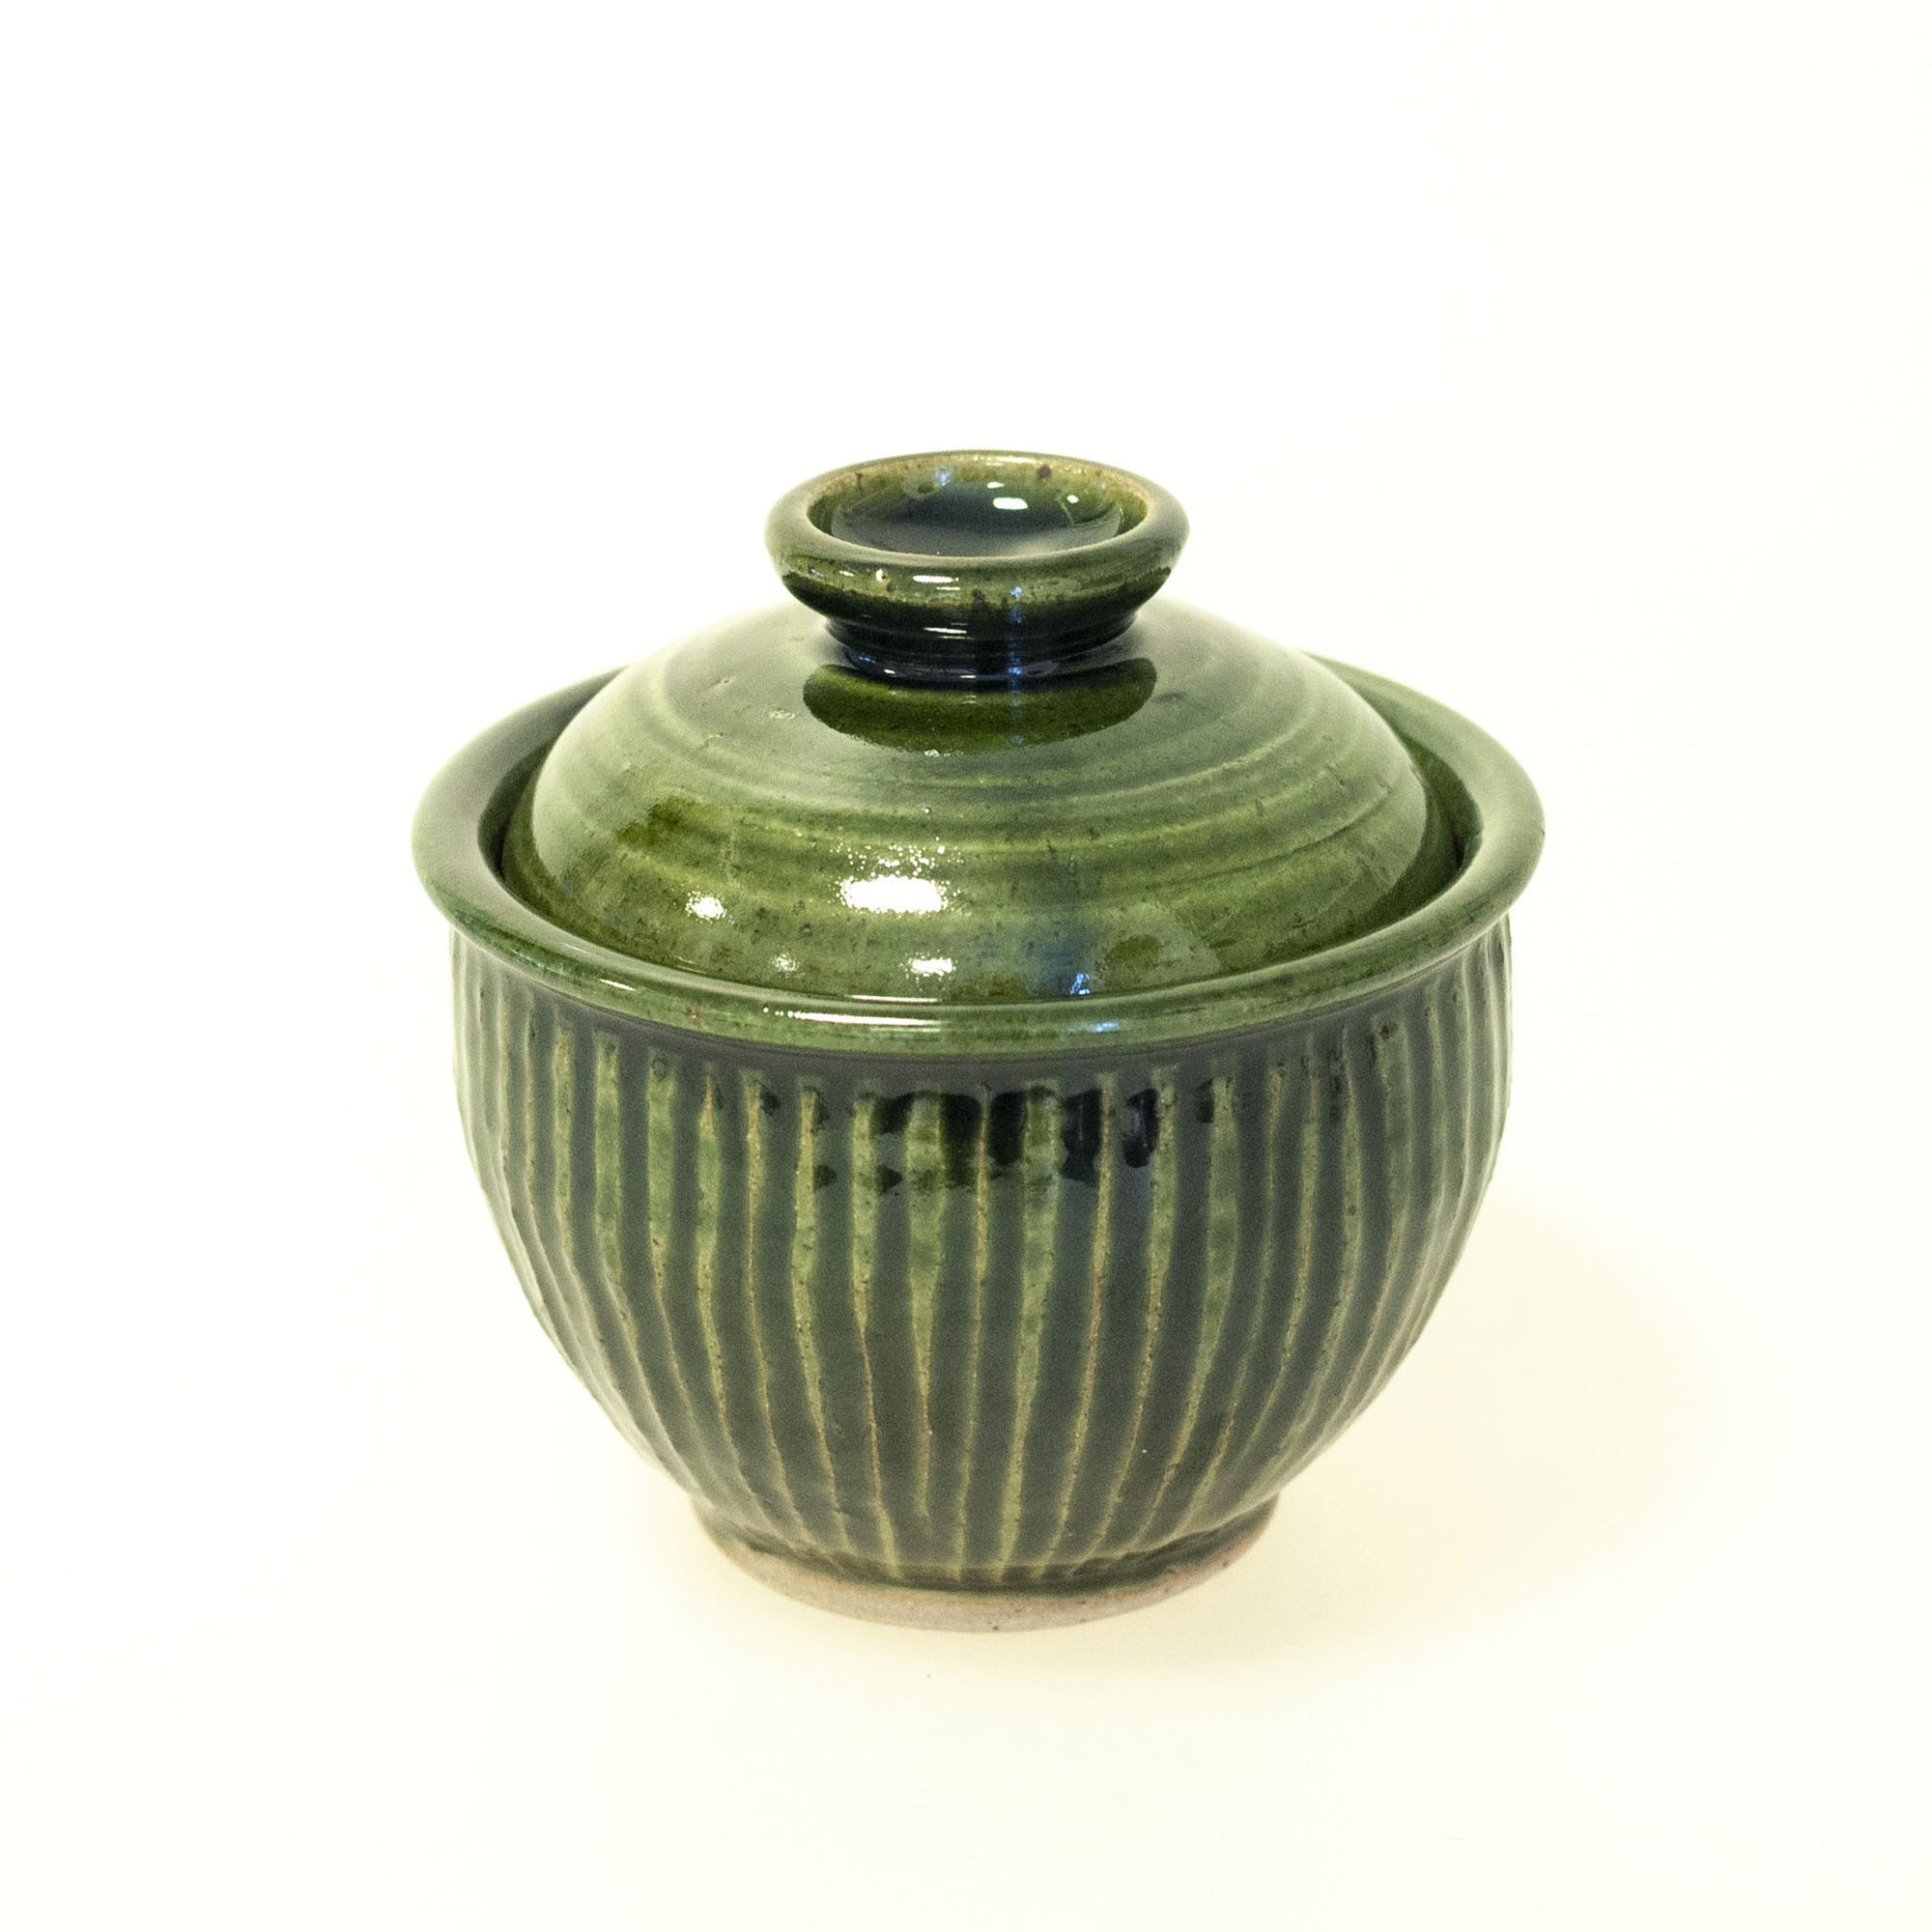 Tidlösa - handdrejad burk med lock i keramik, liten. Grön glasyr